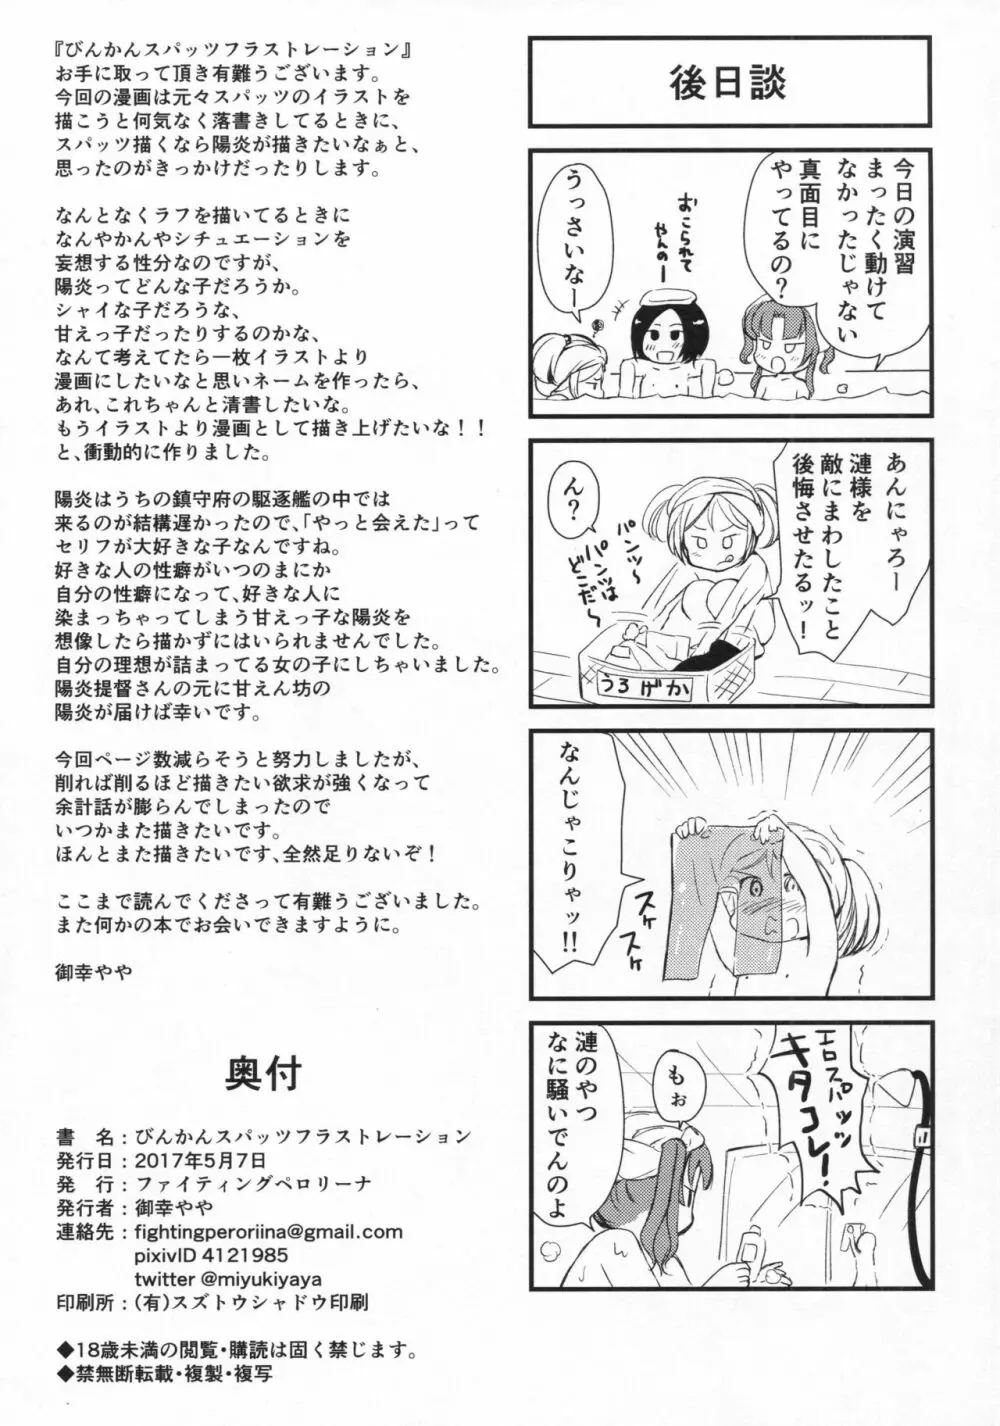 びんかんスパッツフラストレーション - page37